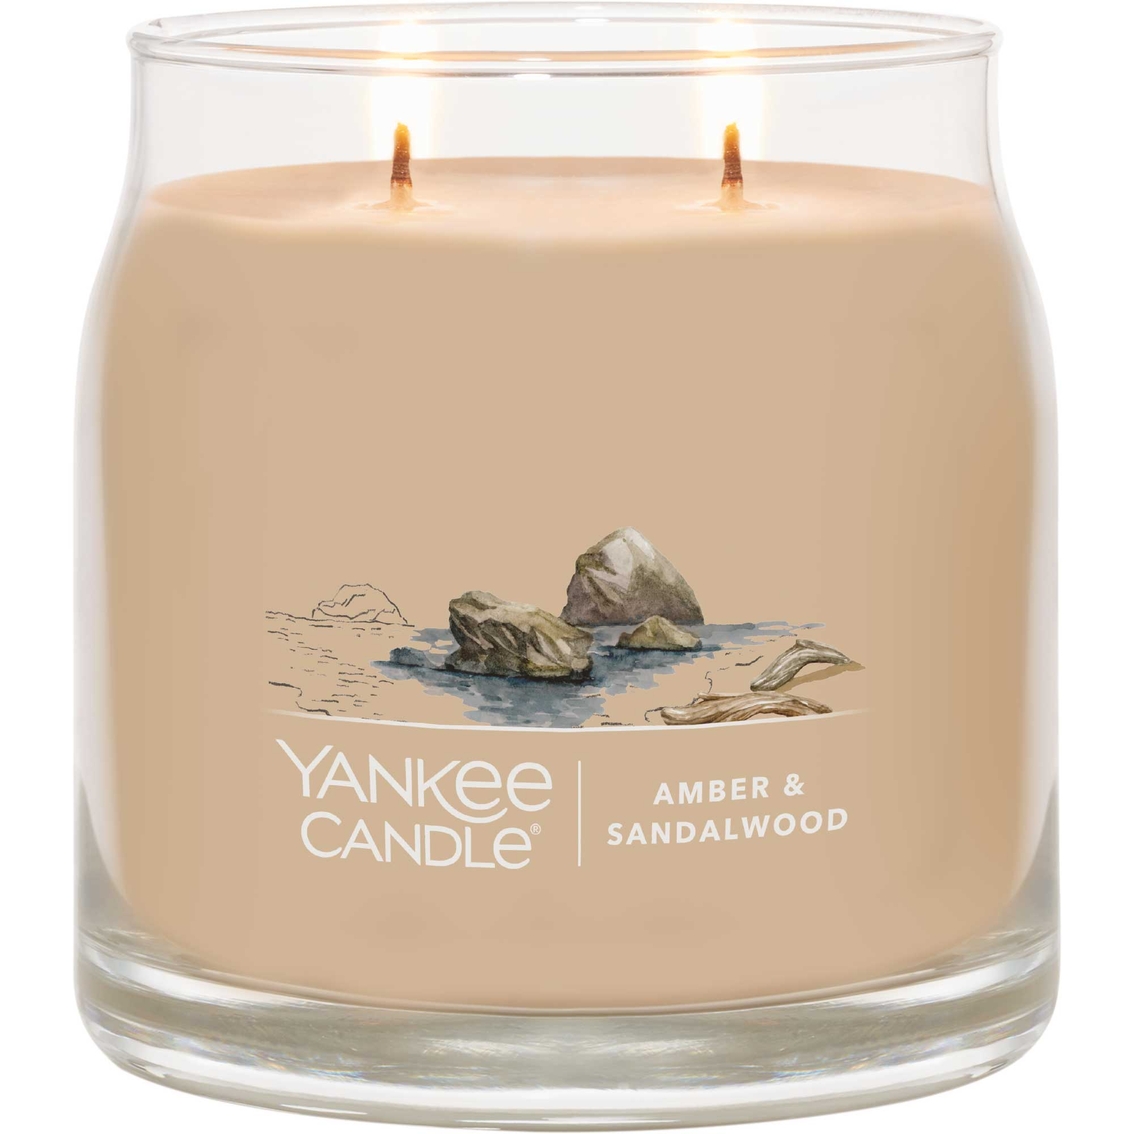 Yankee Candle Amber and Sandalwood Signature Medium Jar Candle - Image 2 of 2